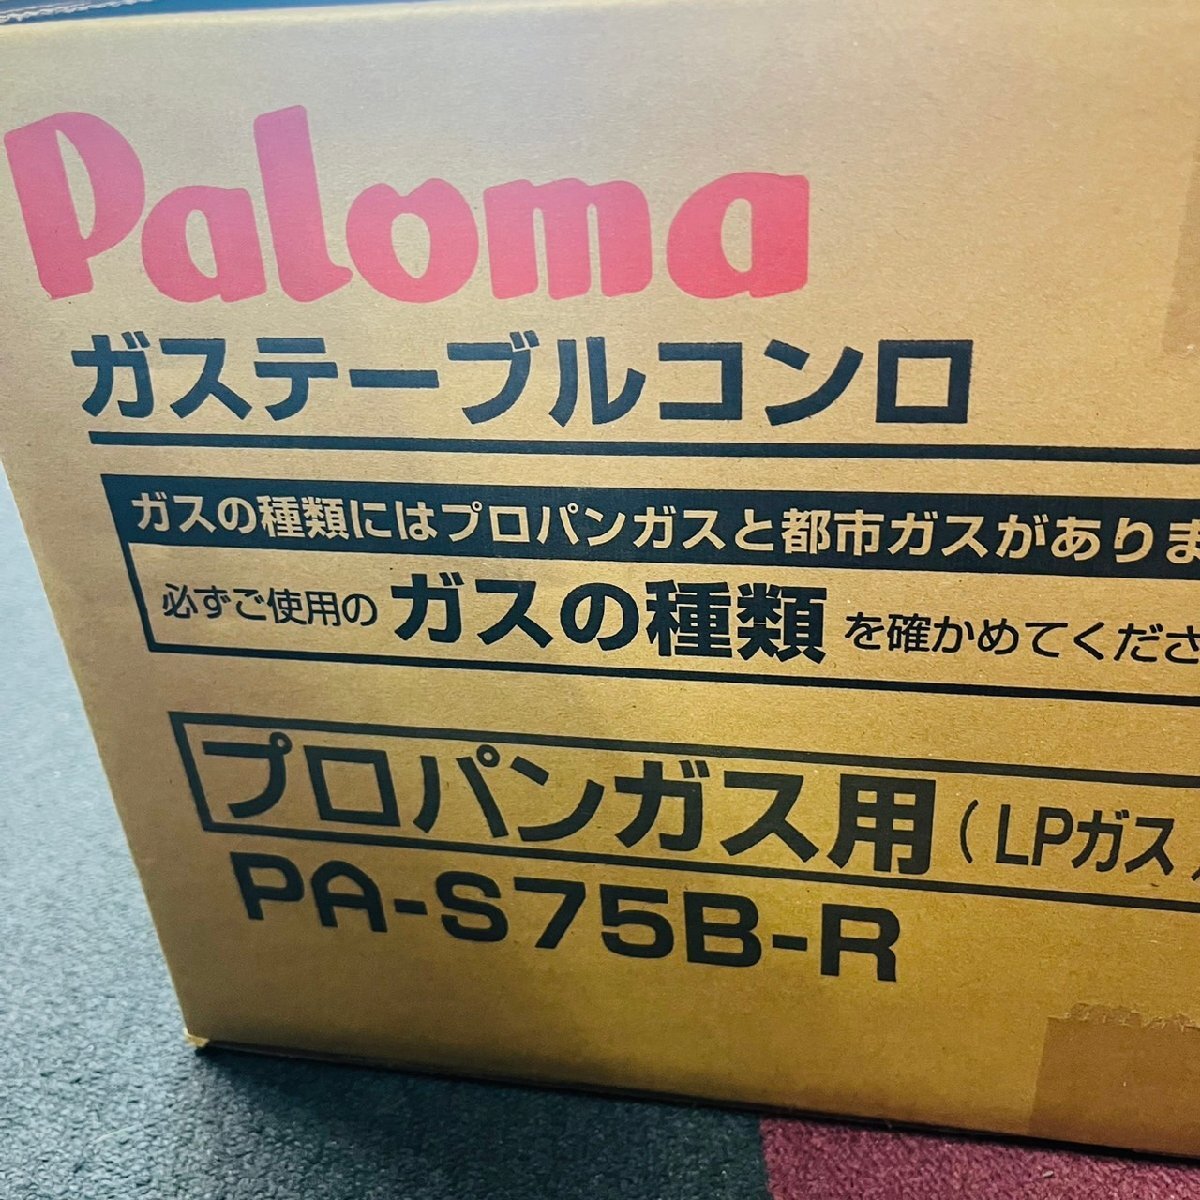 【箱傷み大特価】Paloma パロマ ガステーブルコンロ 2口 LPガス プロパンガス PA-S75B-R グリル付き コンパクトタイプの画像2